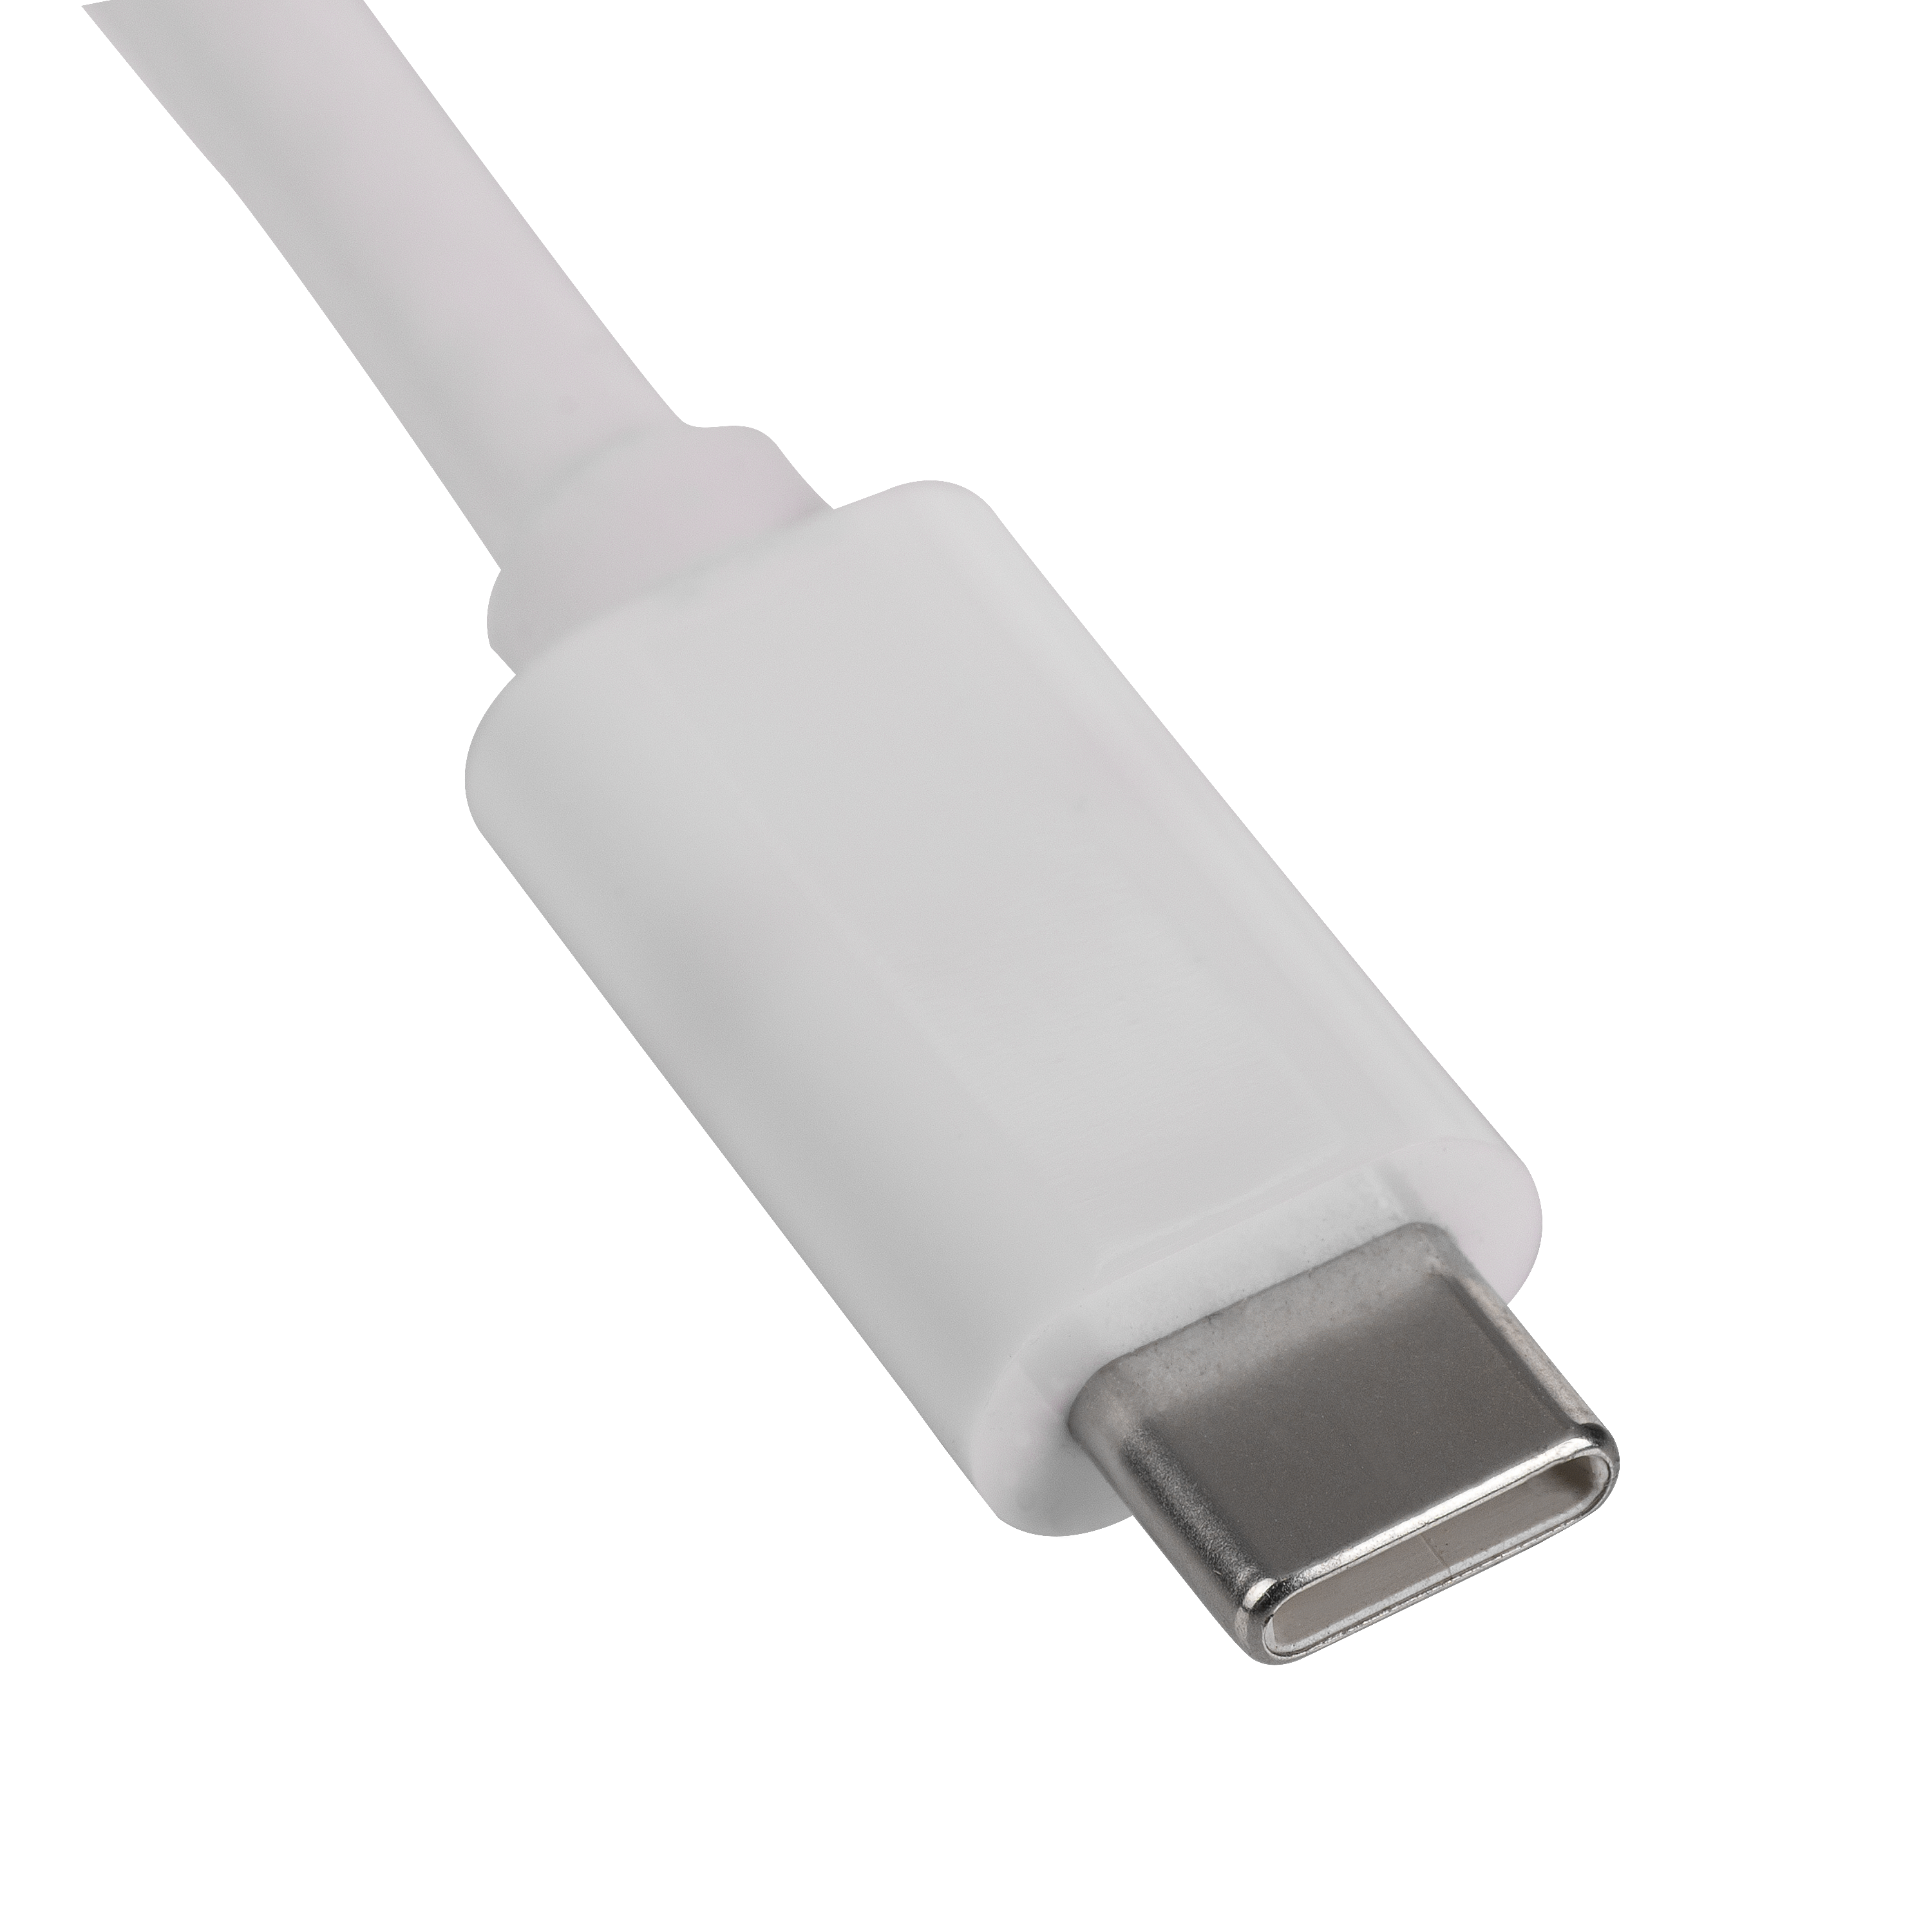 Hub AK-AD-57 USB type C / USB 3.0 / USB type C / HDMI